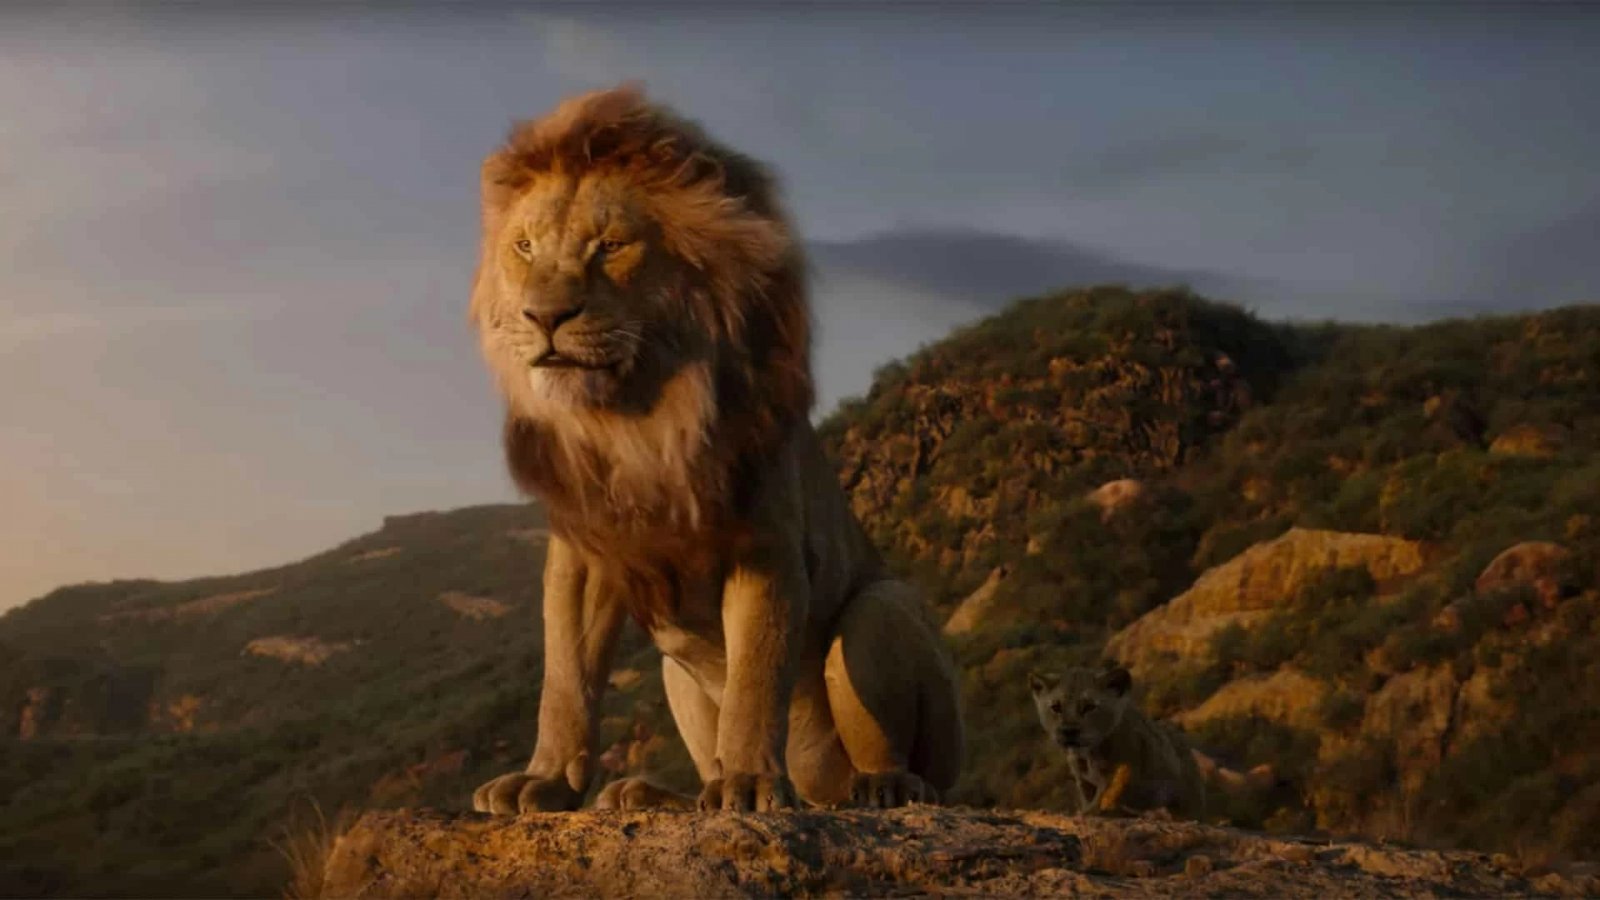 Mufasa: Il Re Leone, la prima immagine teaser ufficiale è stata pubblicata